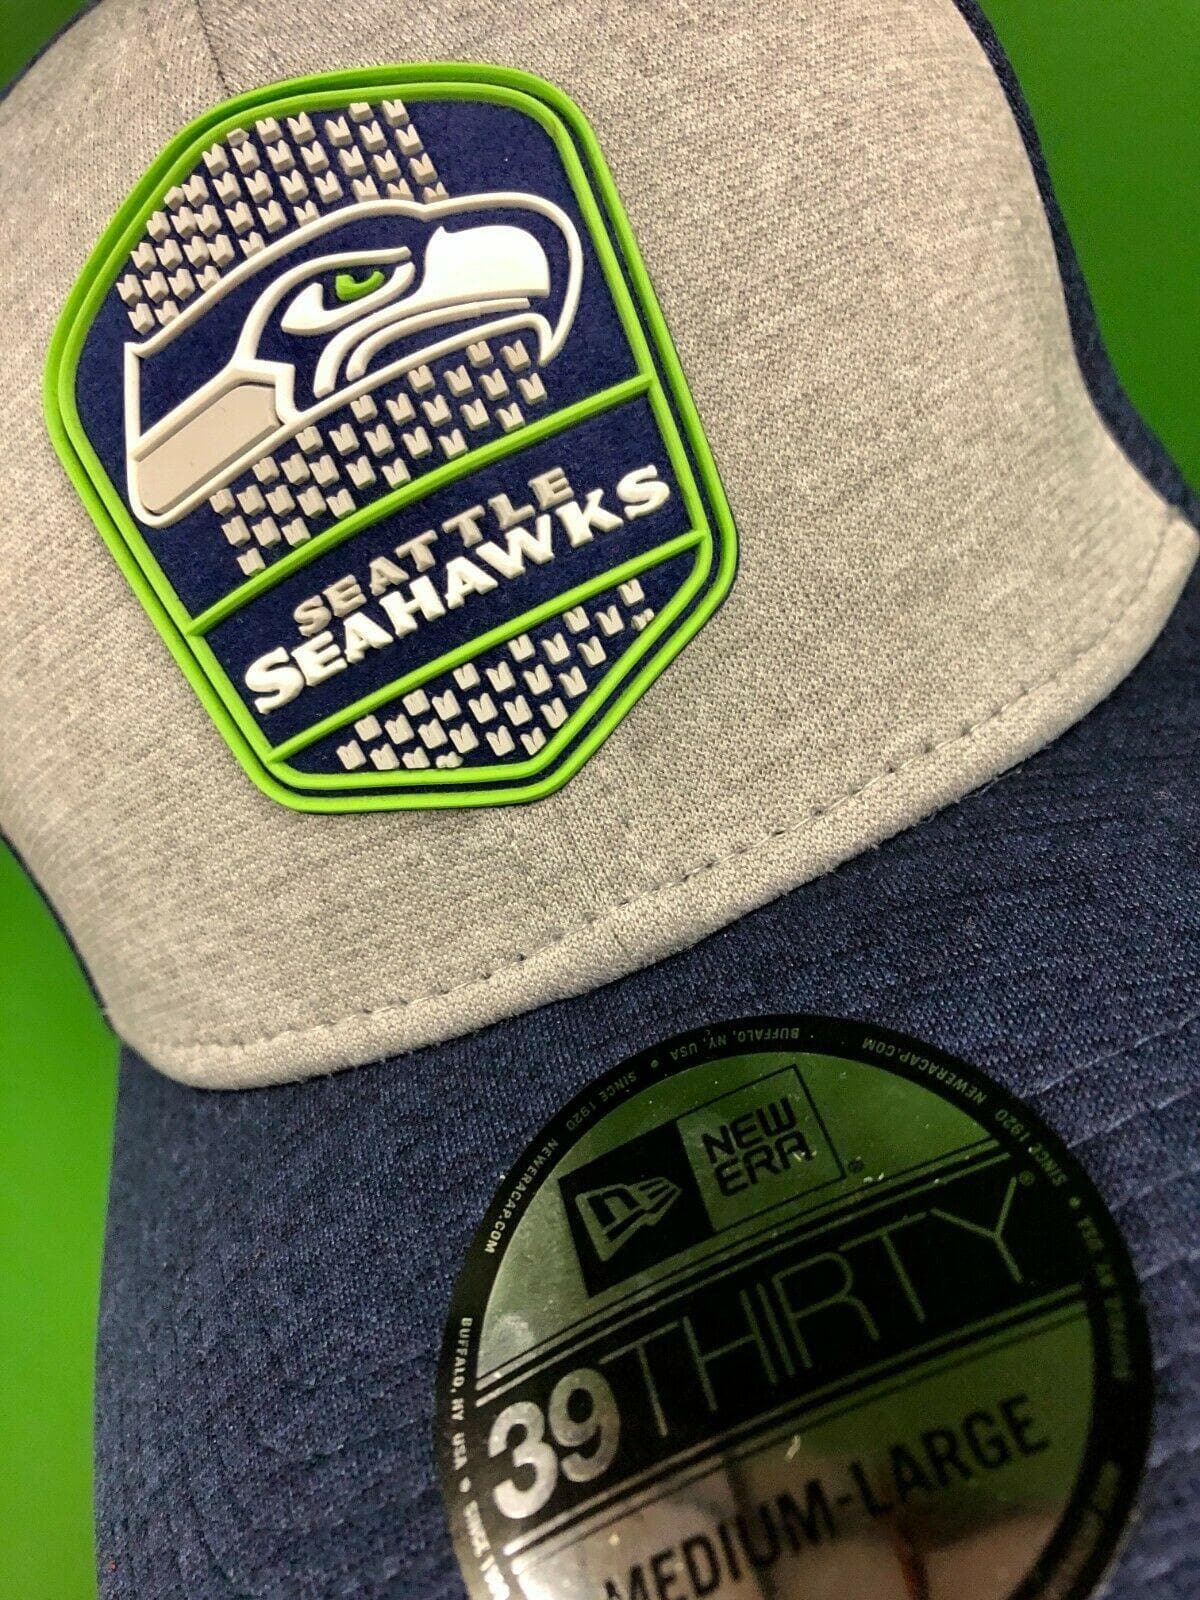 NFL Seattle Seahawks New Era 39THIRTY Sideline Hat Cap NWT Medium-Large